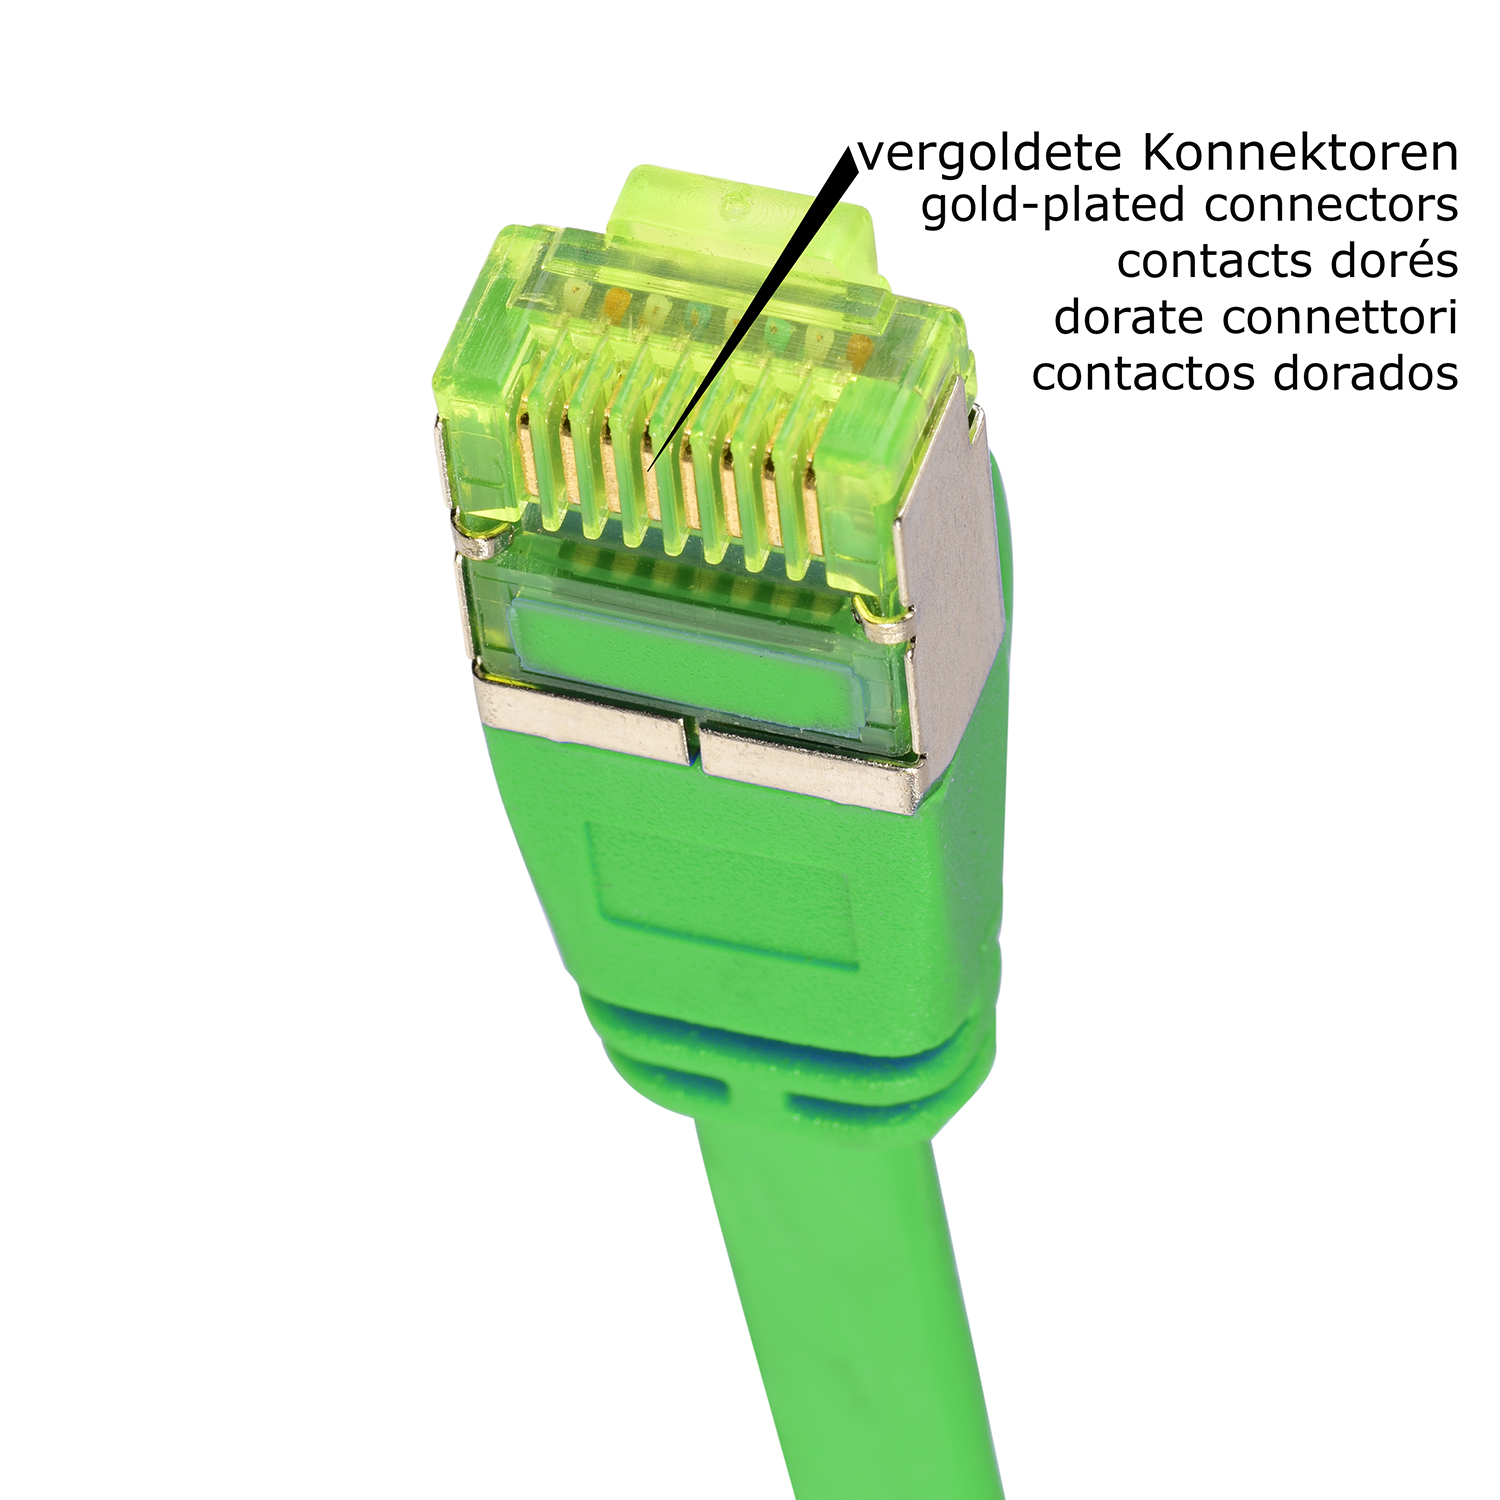 TPFNET 1m Patchkabel / Flachkabel grün, U/FTP 1 GBit, m 10 Netzwerkkabel